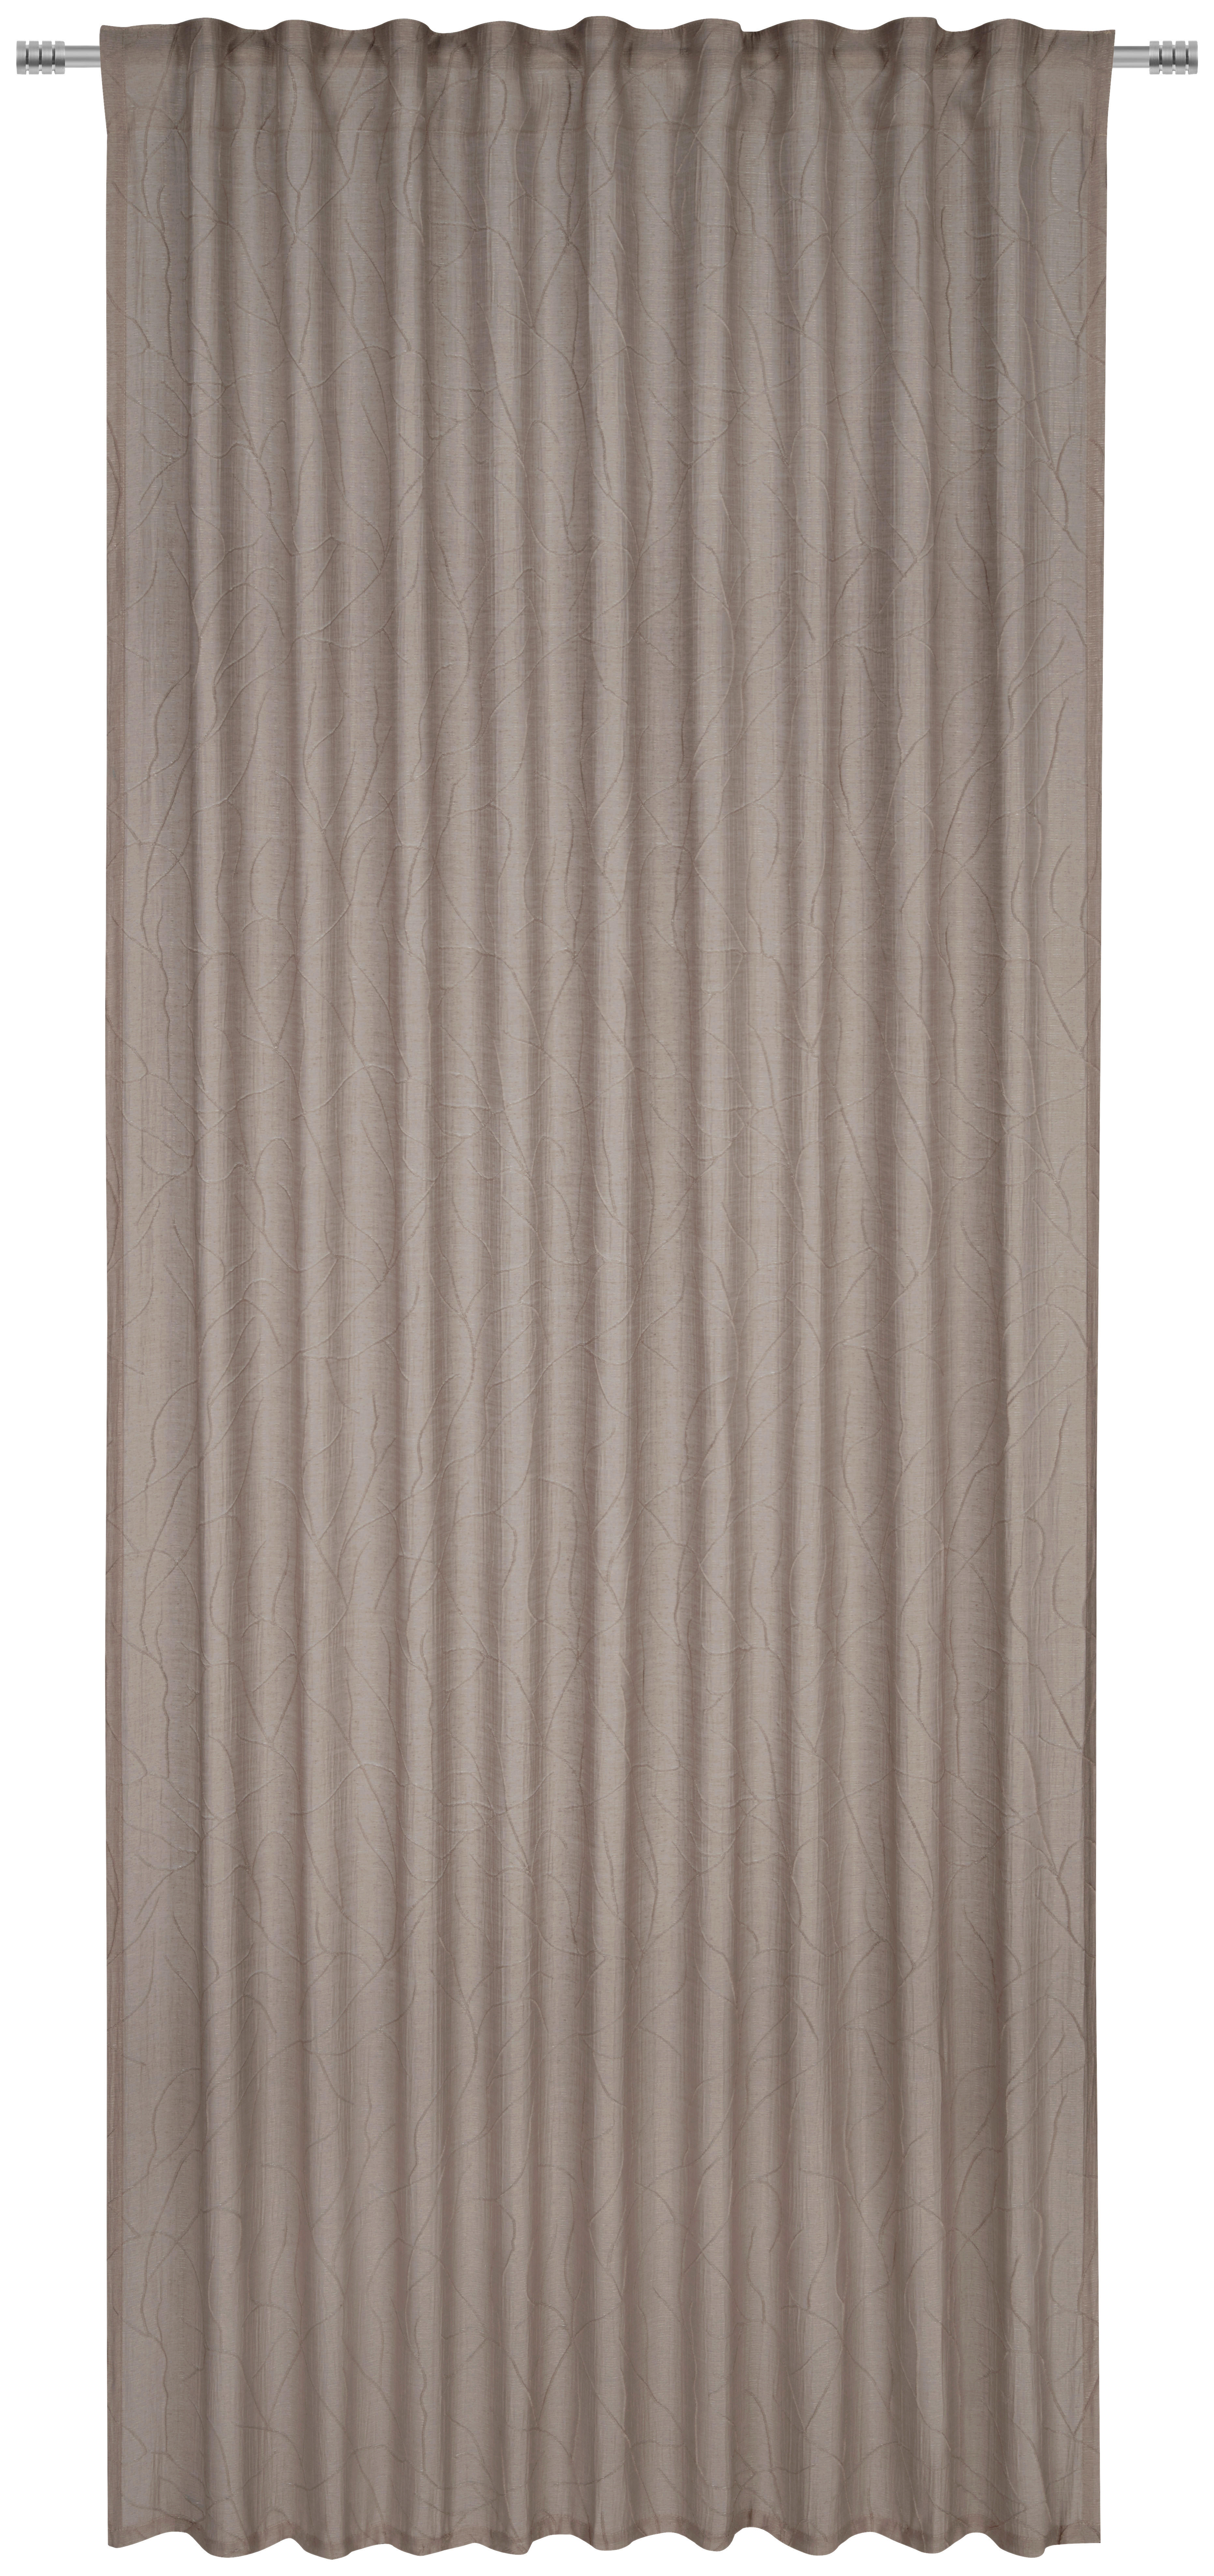 GARDINLÄNGD halvtransparent  - brun, Design, textil (135/245cm) - Esposa